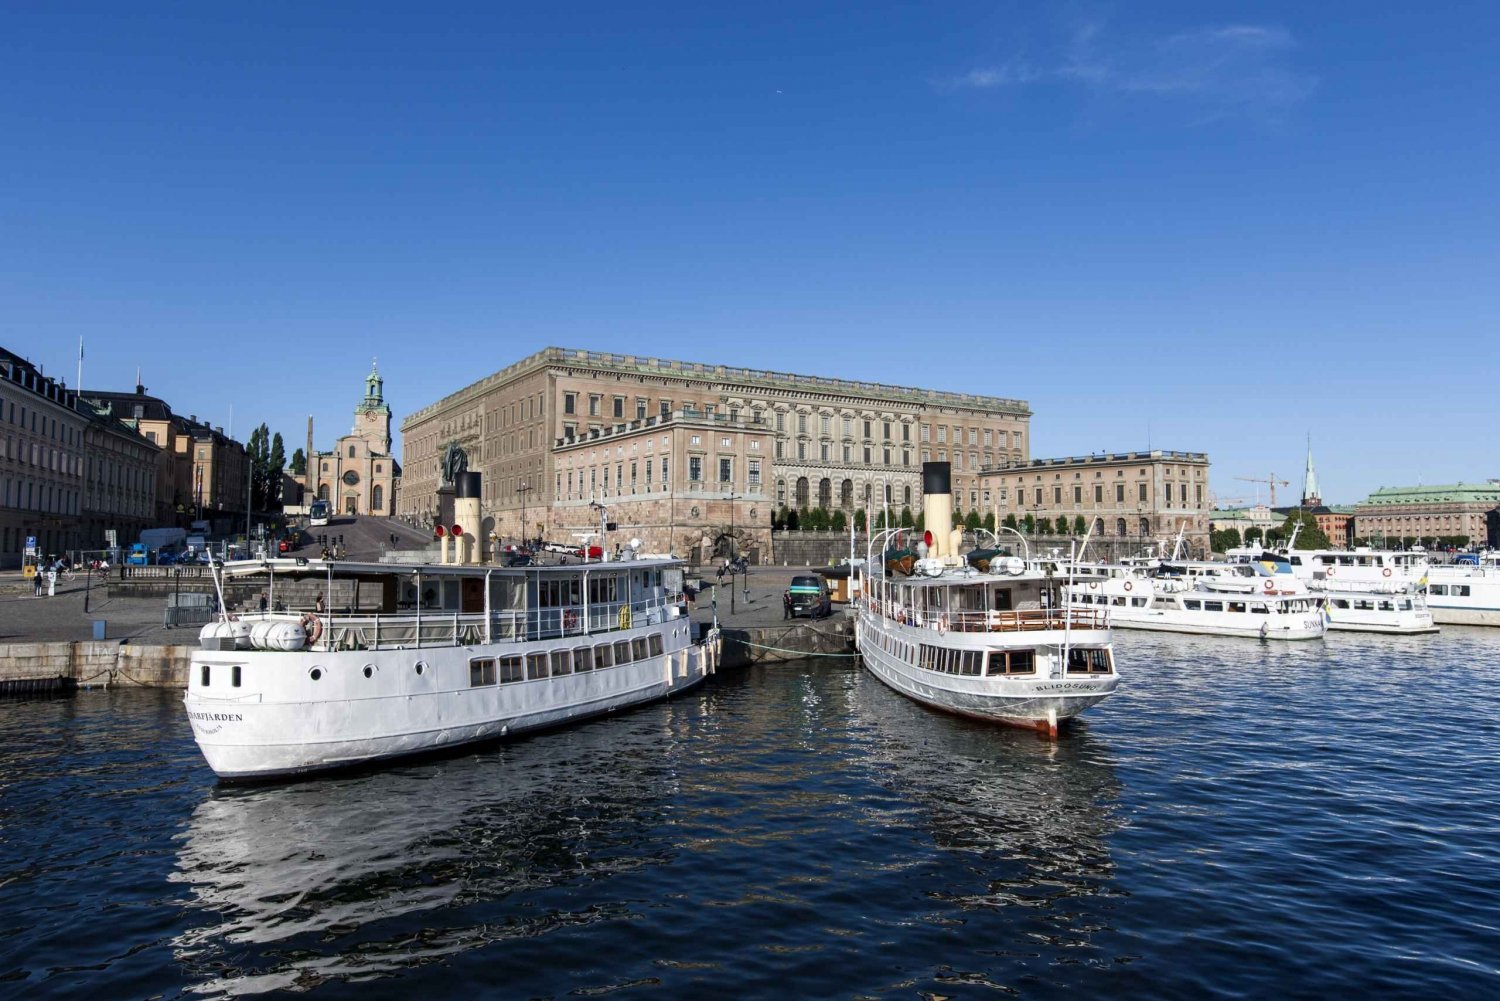 Estocolmo: Excursão a pé pela Cidade Velha com Museu Vasa e passeio de barco